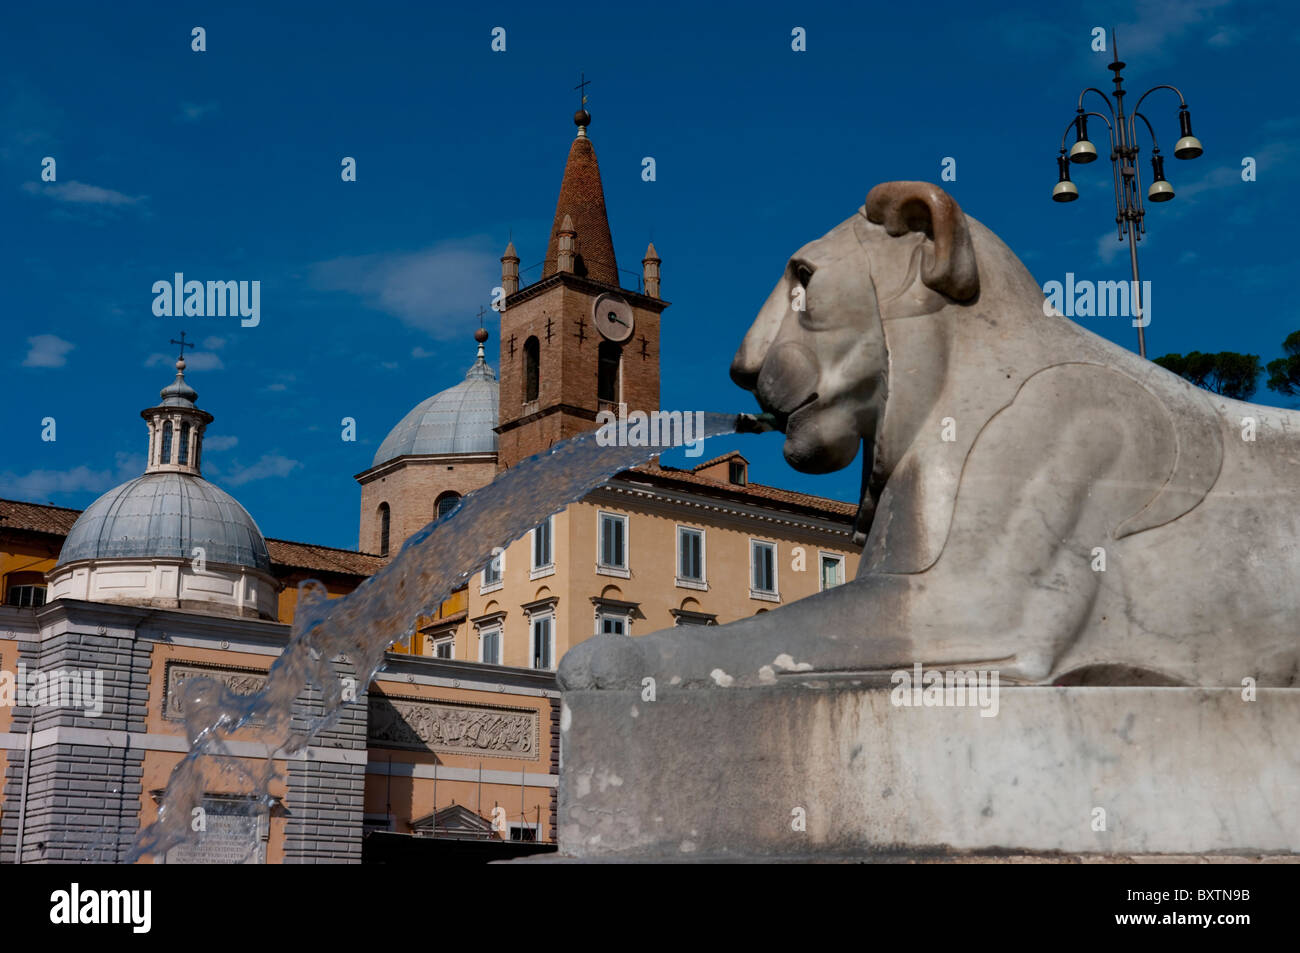 Europa, Italia, Roma, Piazza del Popolo Foto de stock